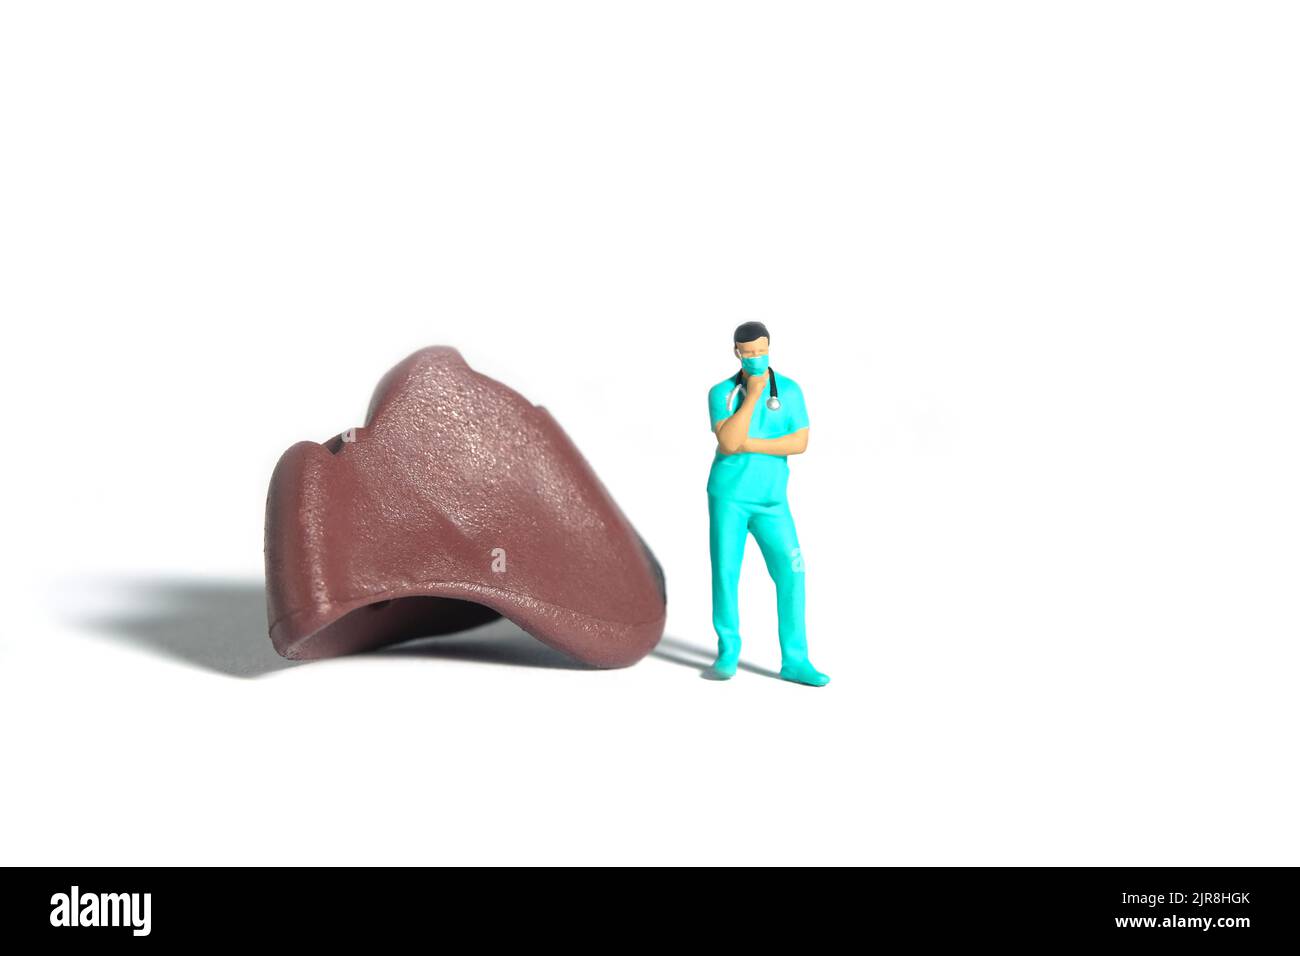 Miniatur Menschen Spielzeug Figur Fotografie. Ein Arzt oder eine Krankenschwester, der vor einem Leberorgan steht und denkt. Isolierter weißer Hintergrund. Bildfoto Stockfoto